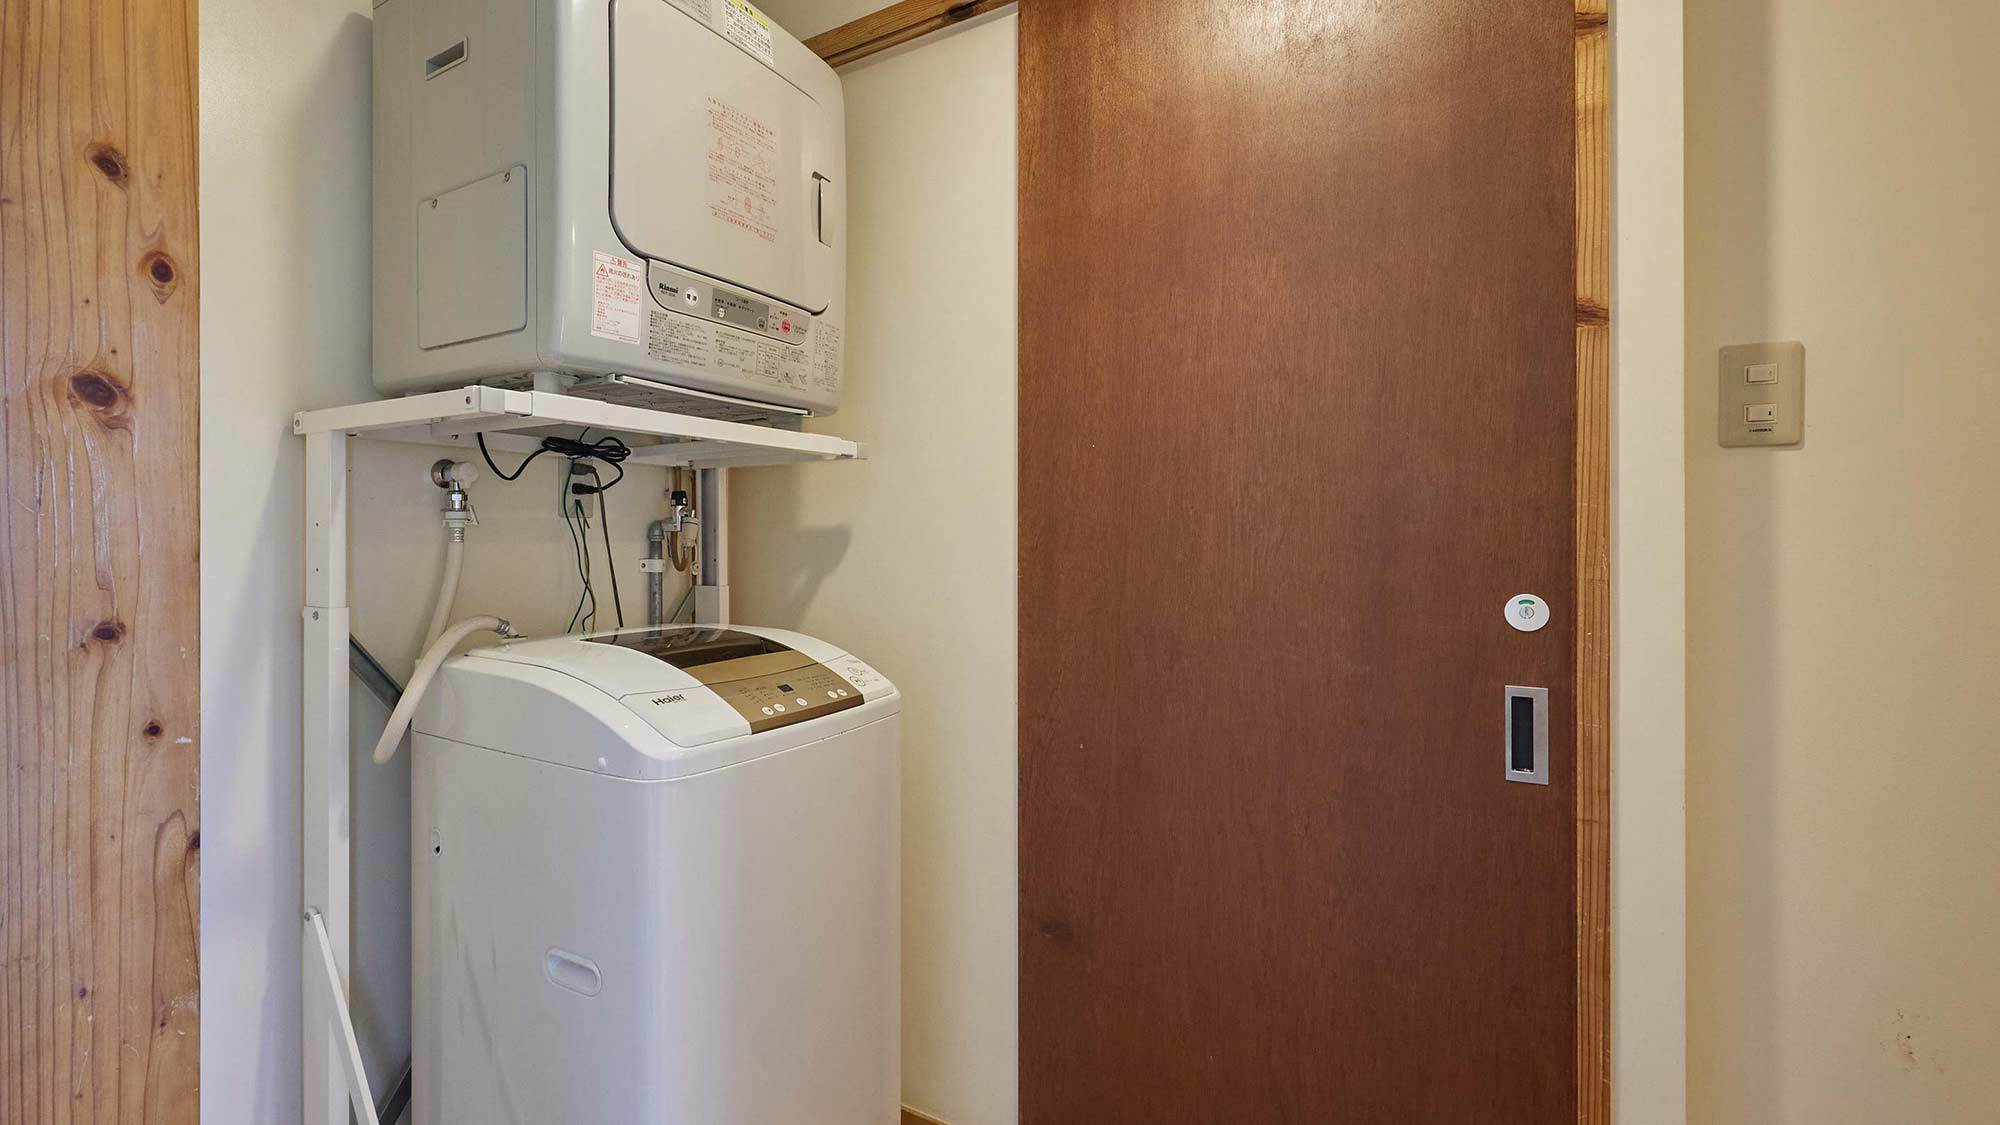 ・【南風1階・洗濯機乾燥機】セパレート型の洗濯機と乾燥機をご用意洗い物が多くなった時も安心です